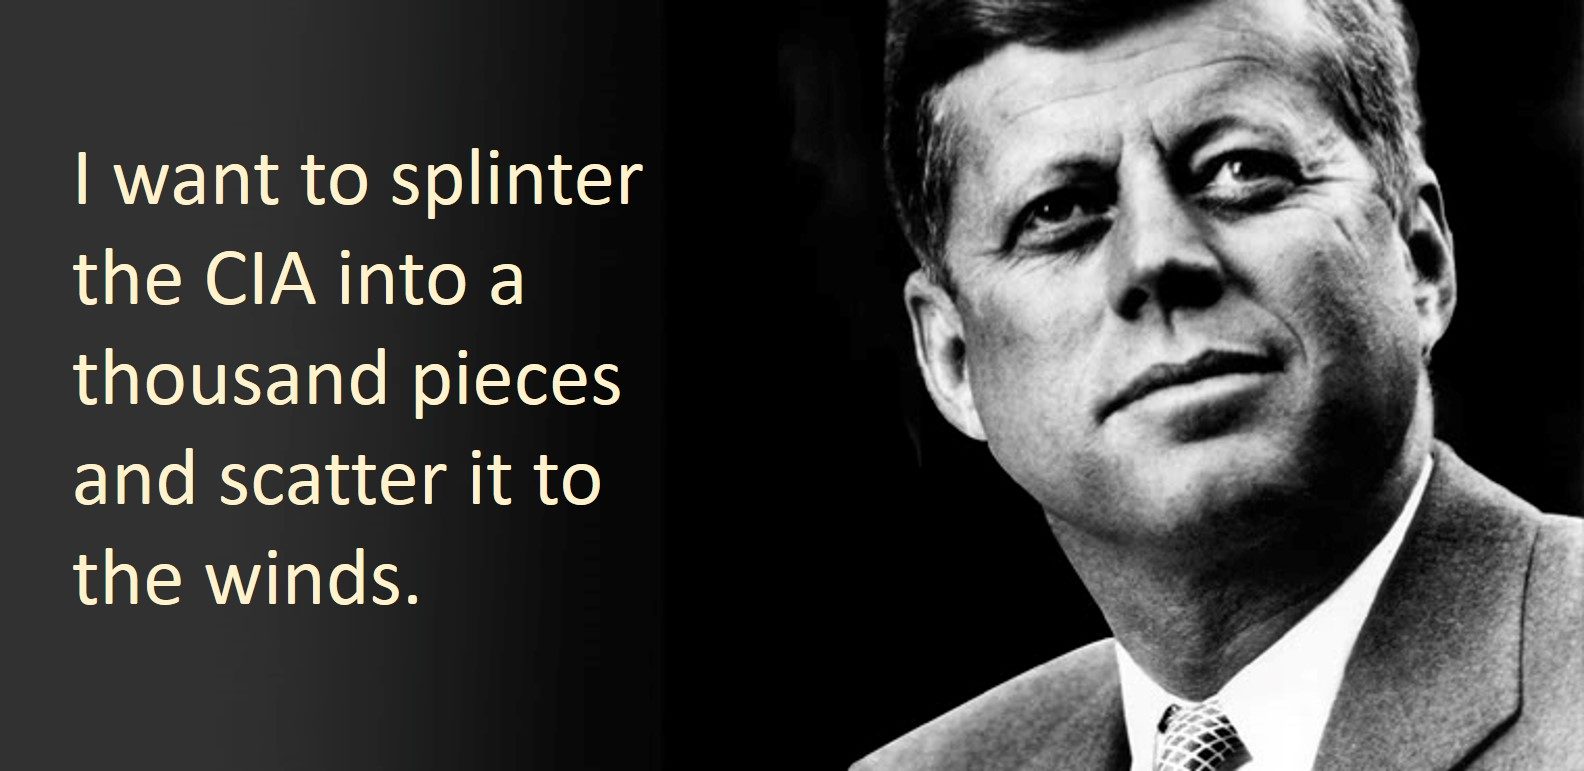 JFK splinter CIA